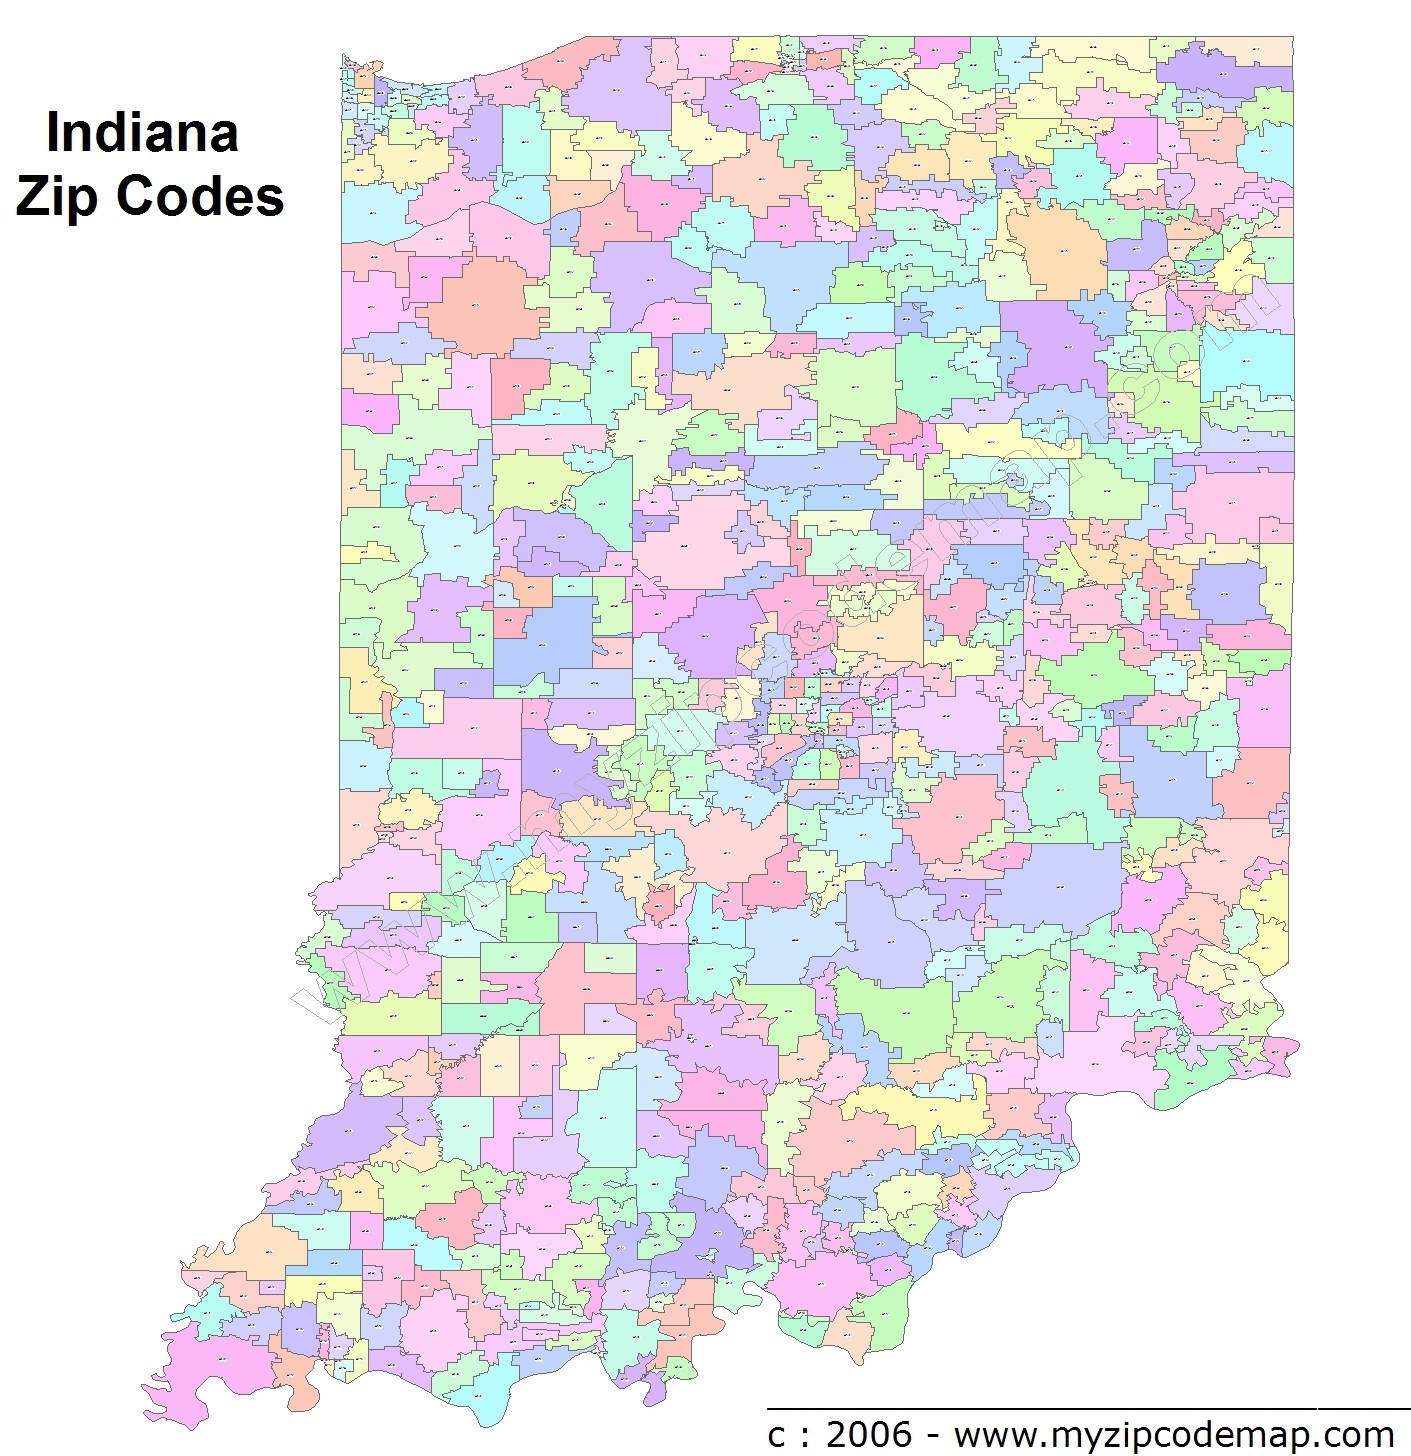 Indiana (IN) Zip Code Map